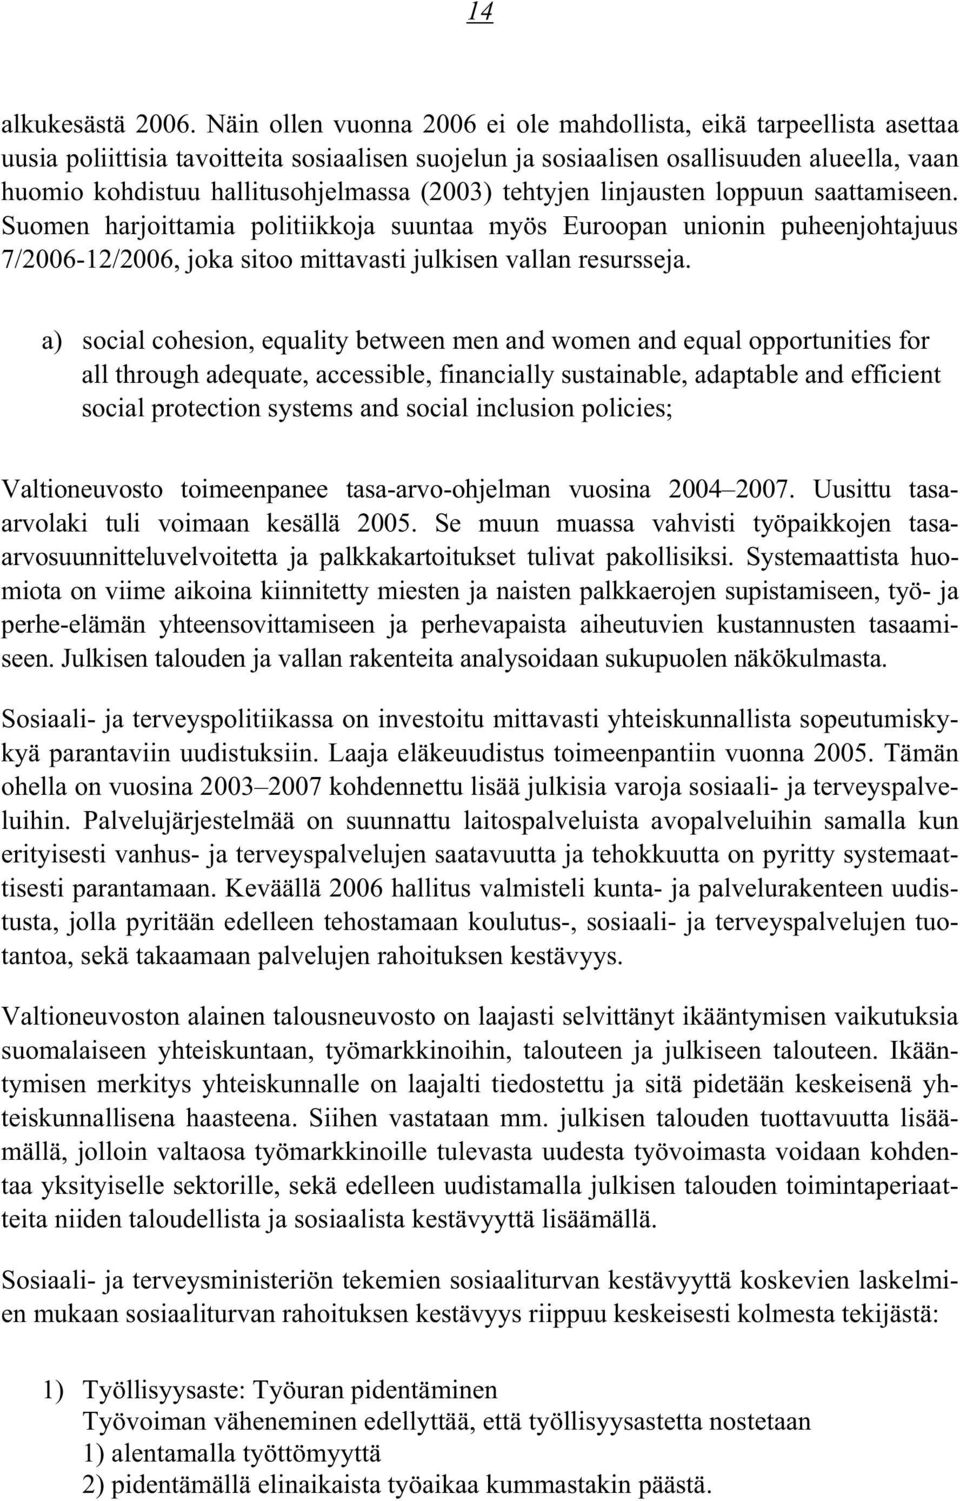 (2003) tehtyjen linjausten loppuun saattamiseen. Suomen harjoittamia politiikkoja suuntaa myös Euroopan unionin puheenjohtajuus 7/2006-12/2006, joka sitoo mittavasti julkisen vallan resursseja.